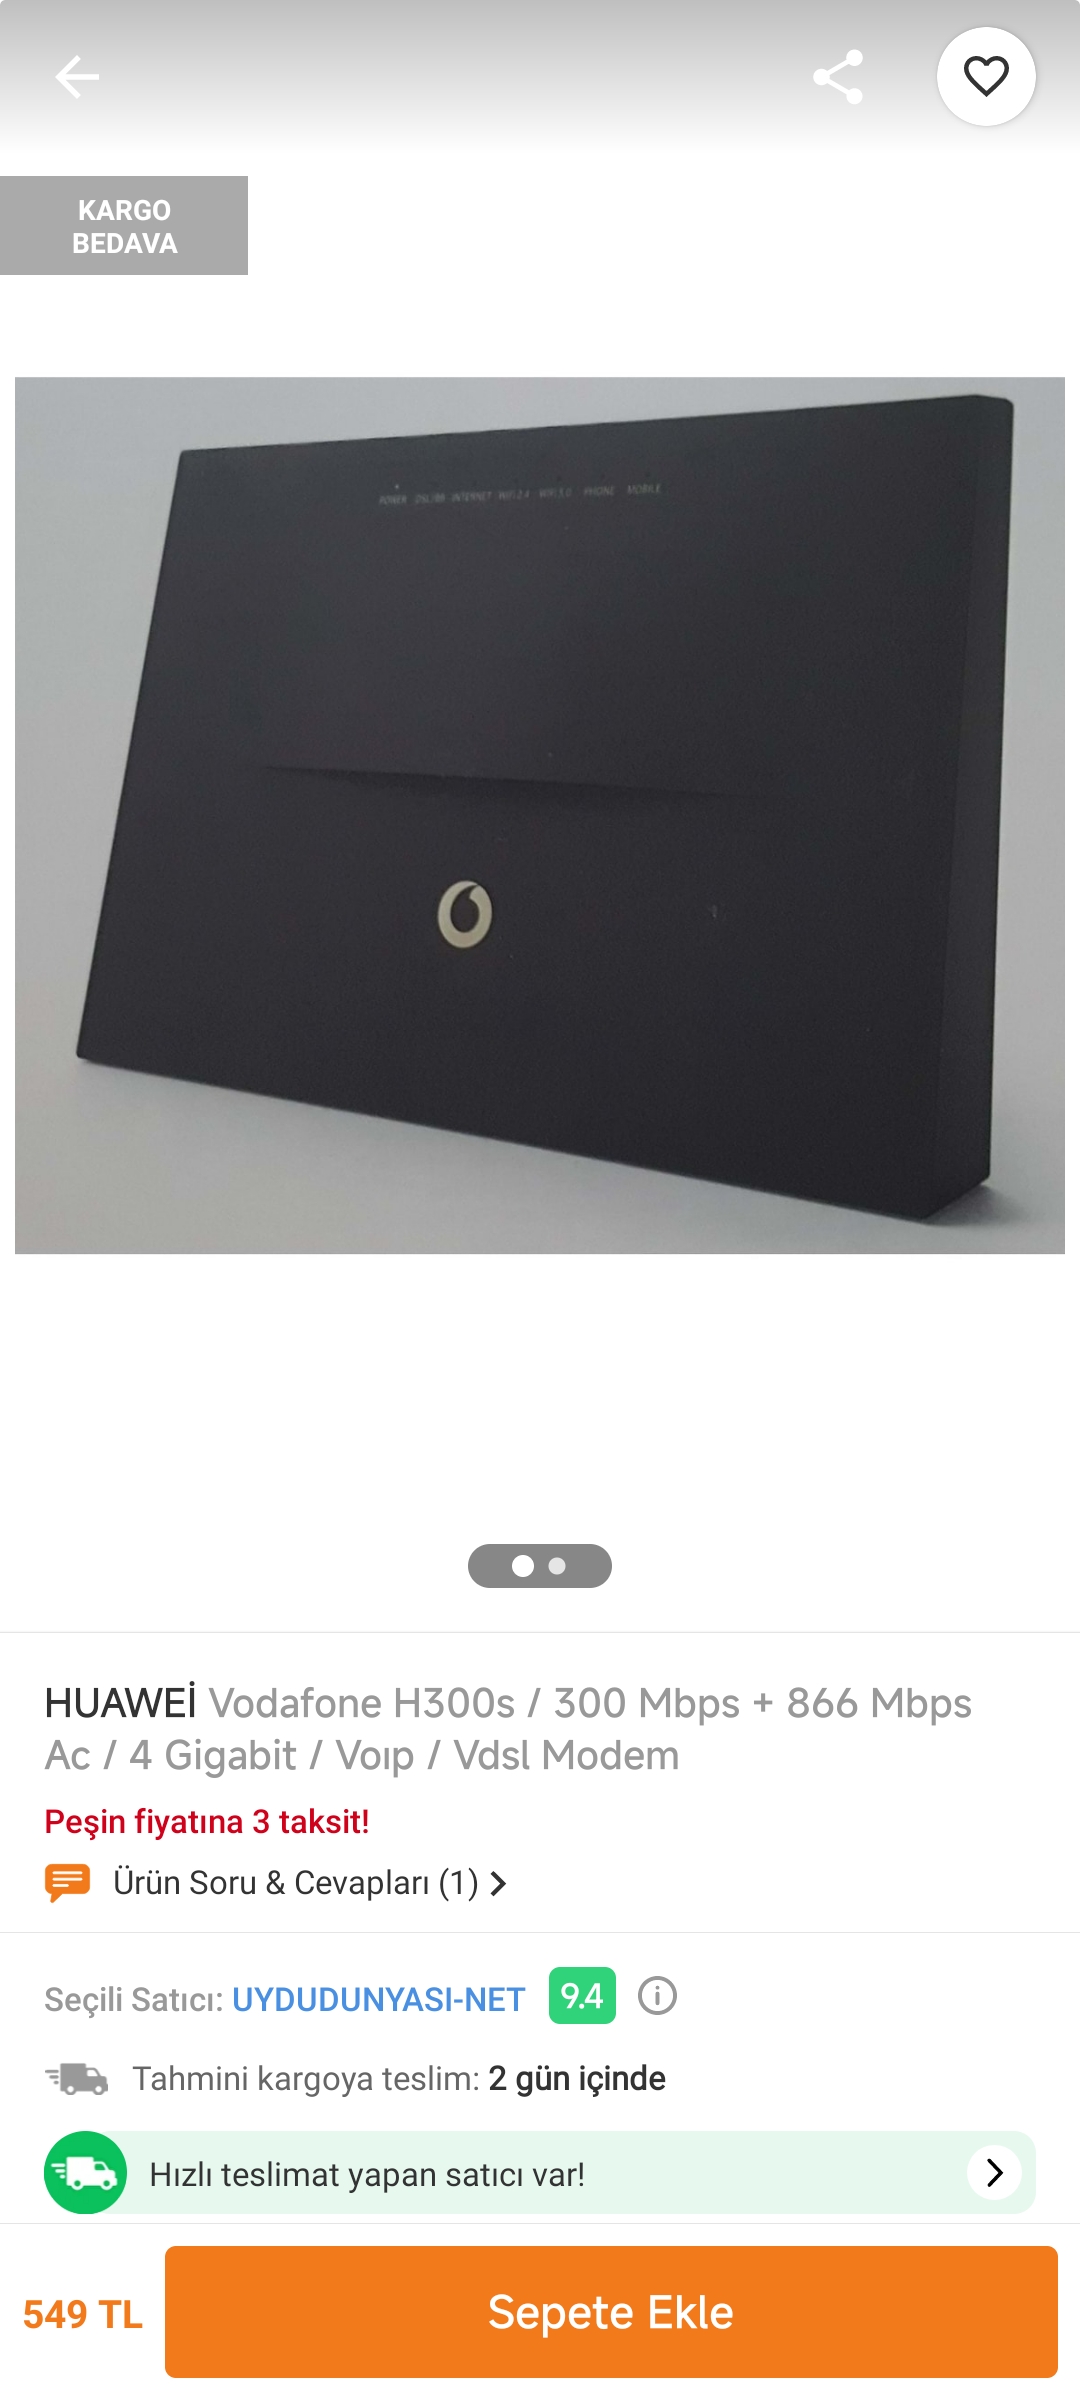 Vodafone Huawei H300s Modem 5G Özellikli Kutulu | DonanımHaber Forum